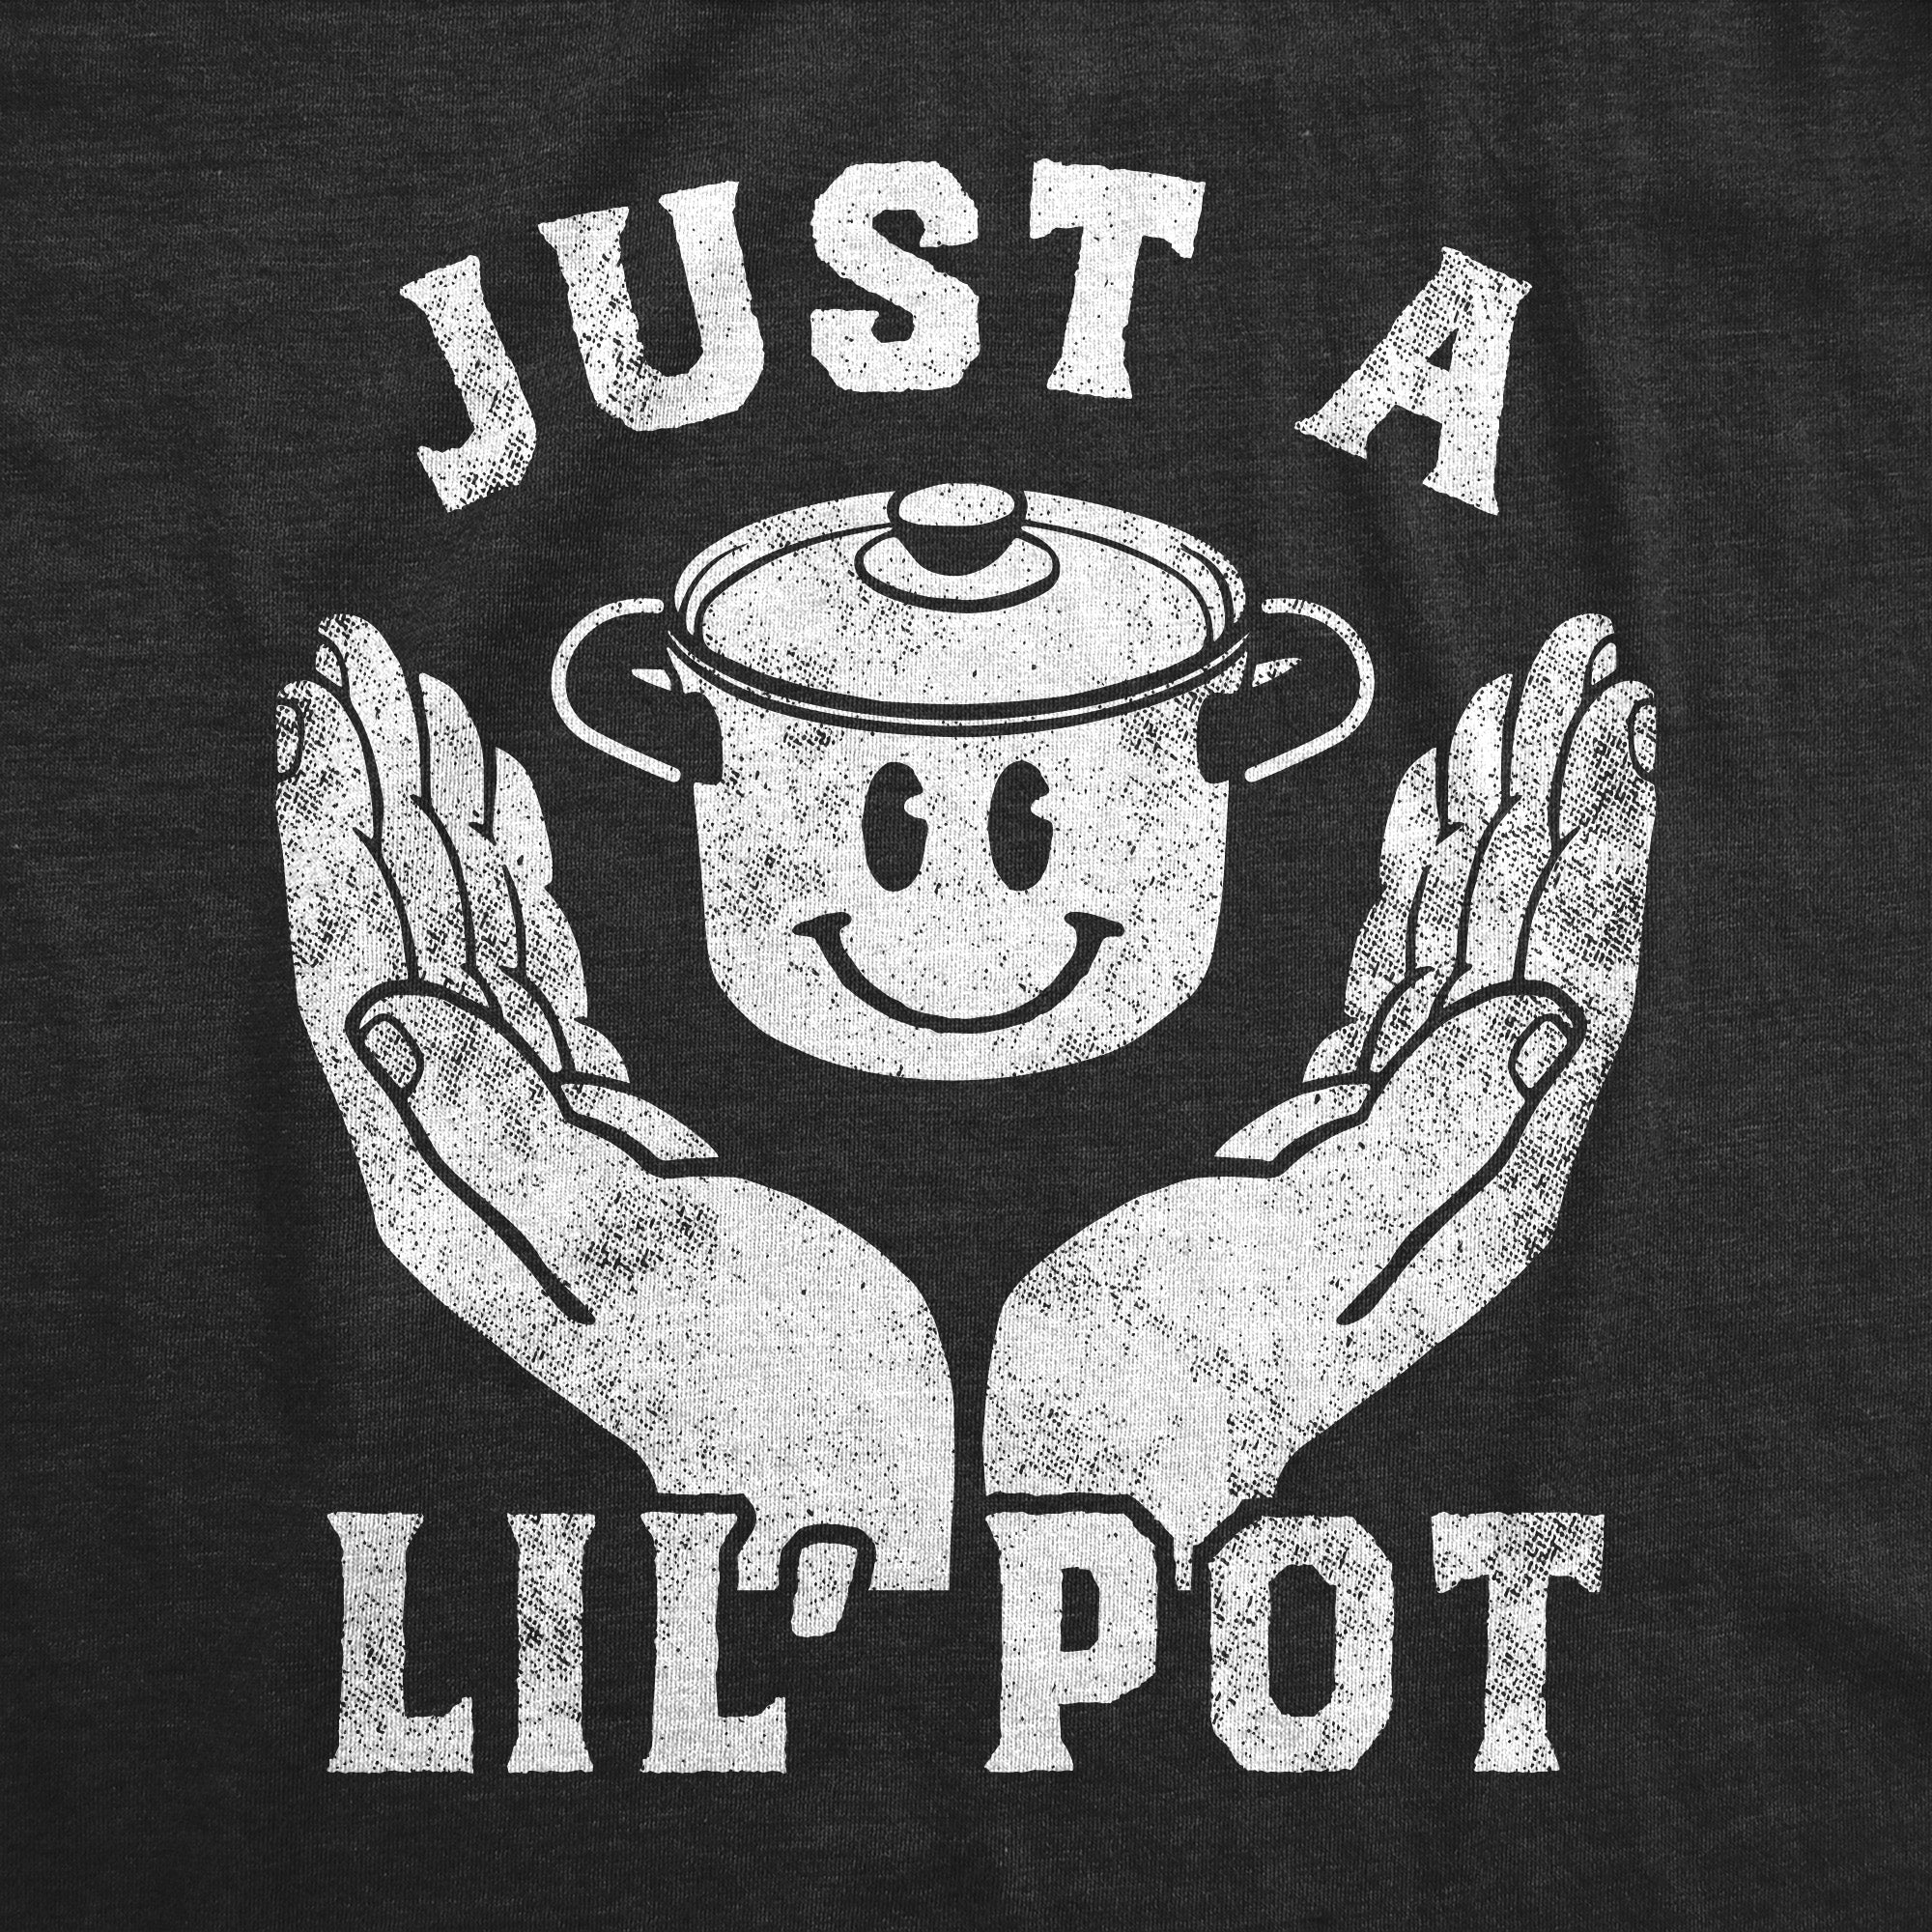 Funny Heather Black - Just A Lil Pot Just A Lil Pot Womens T Shirt Nerdy 420 Sarcastic Tee